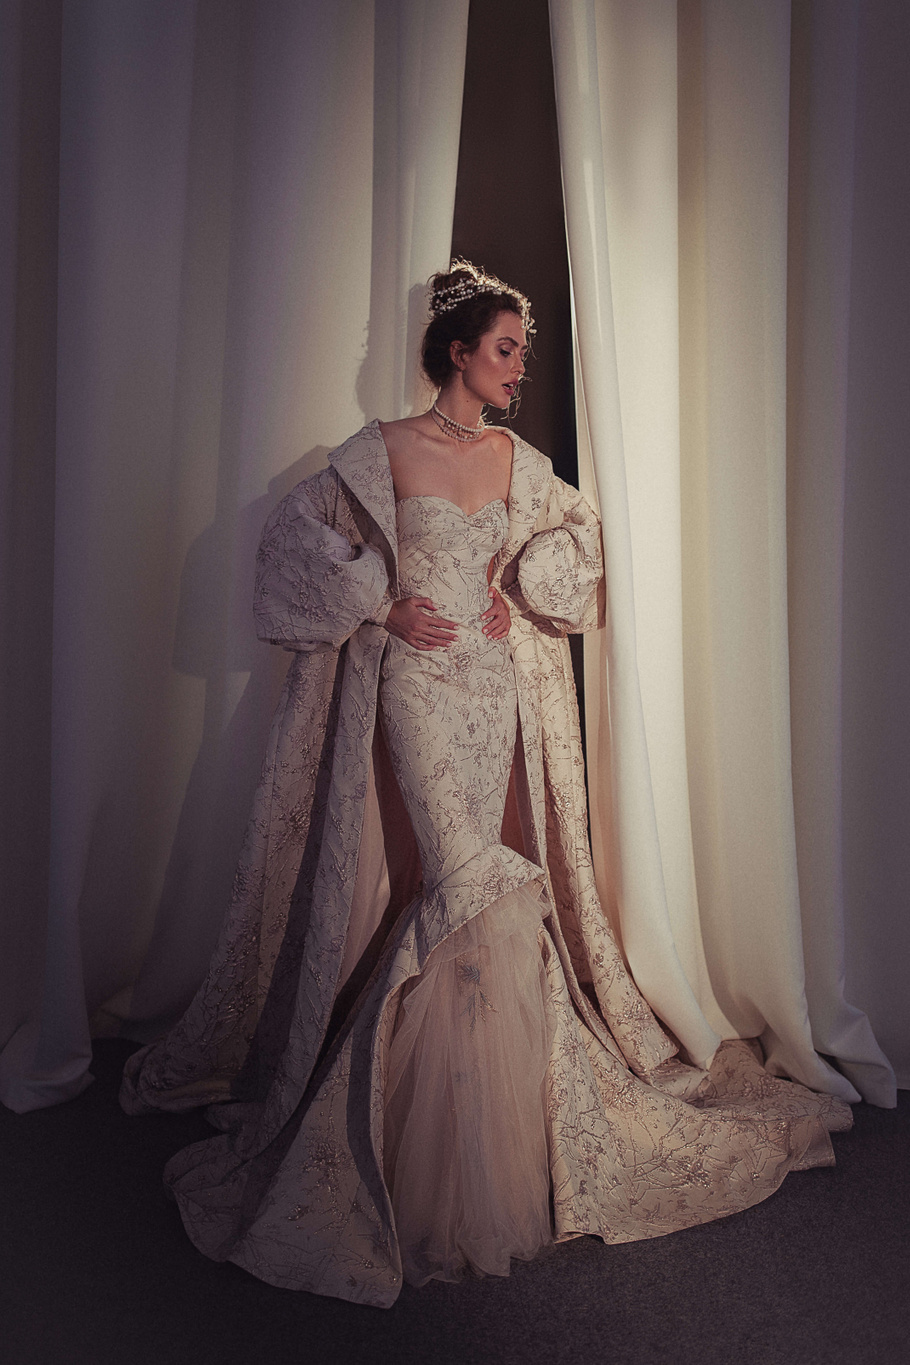 Купить свадебное платье «Цирцея» Бламмо Биамо из коллекции Свит Лайф 2021 года в Нижнем Новгороде